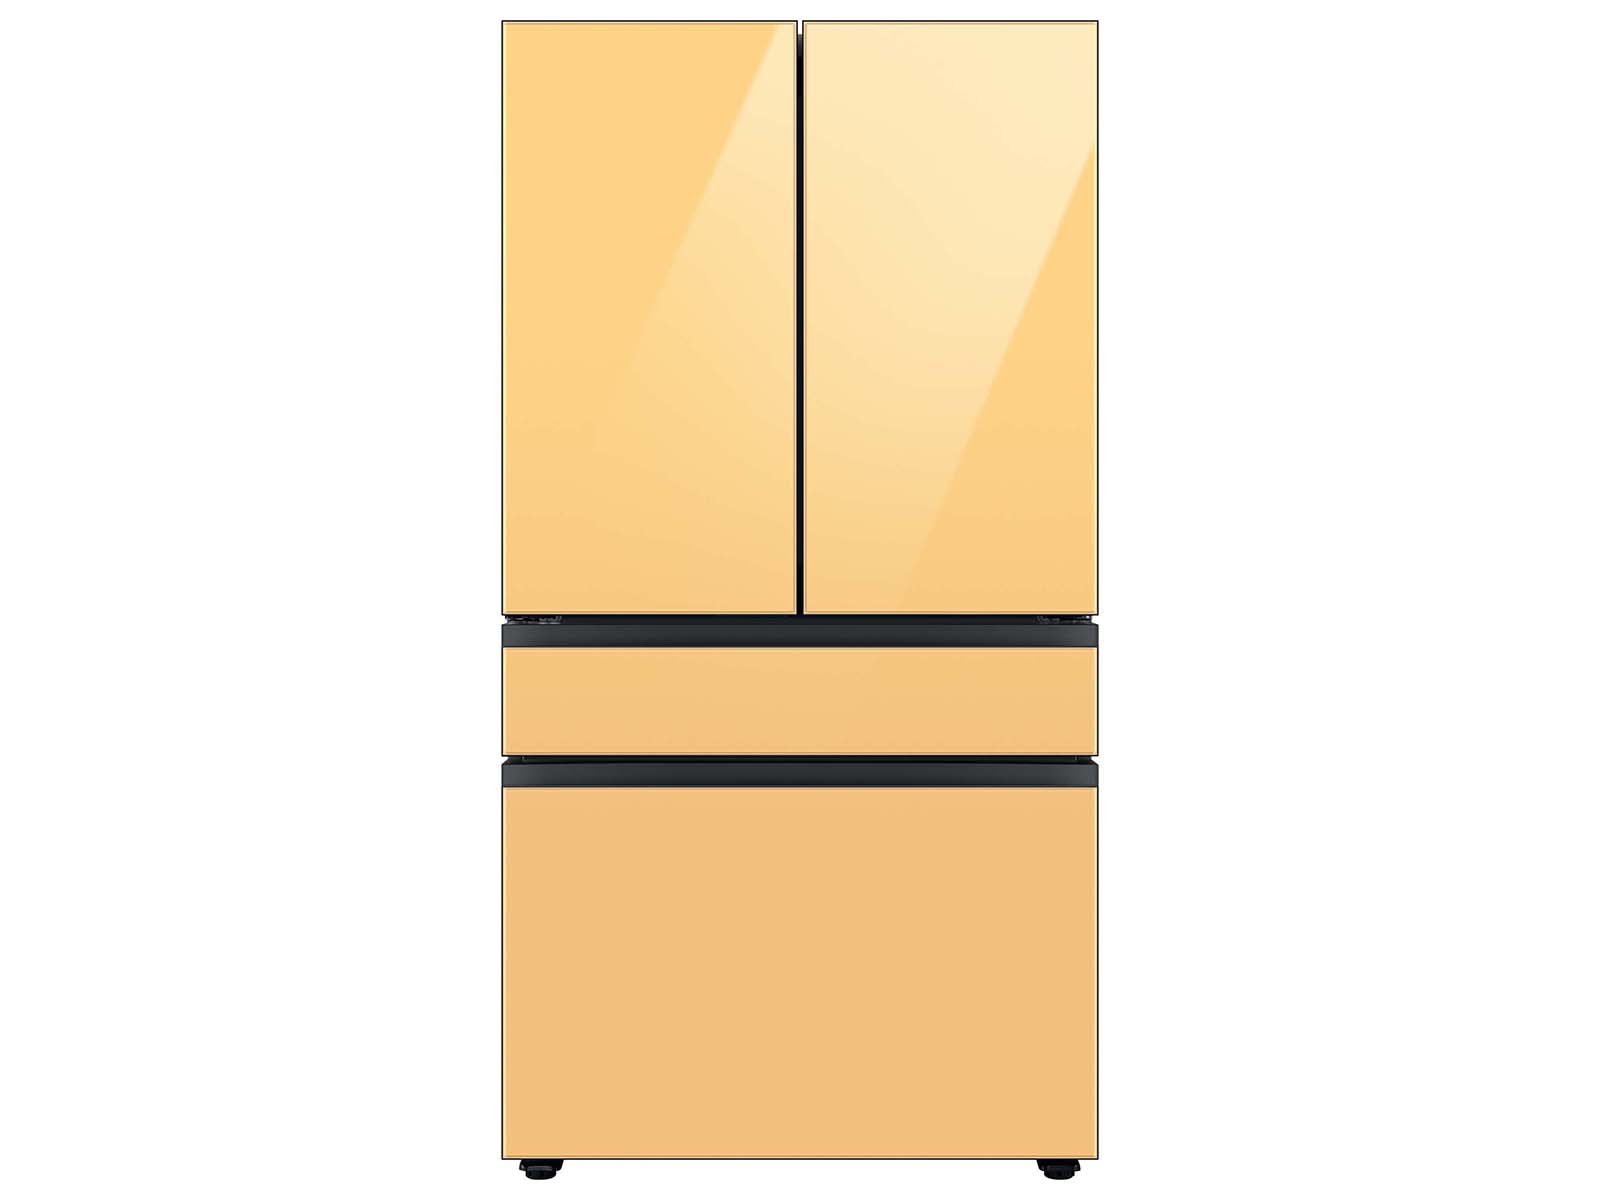 Bespoke 4-Door French Door Refrigerator (23 cu. ft.) with Customizable Door Panel Colors and Beverage Center™ in Sunrise Yellow Glass